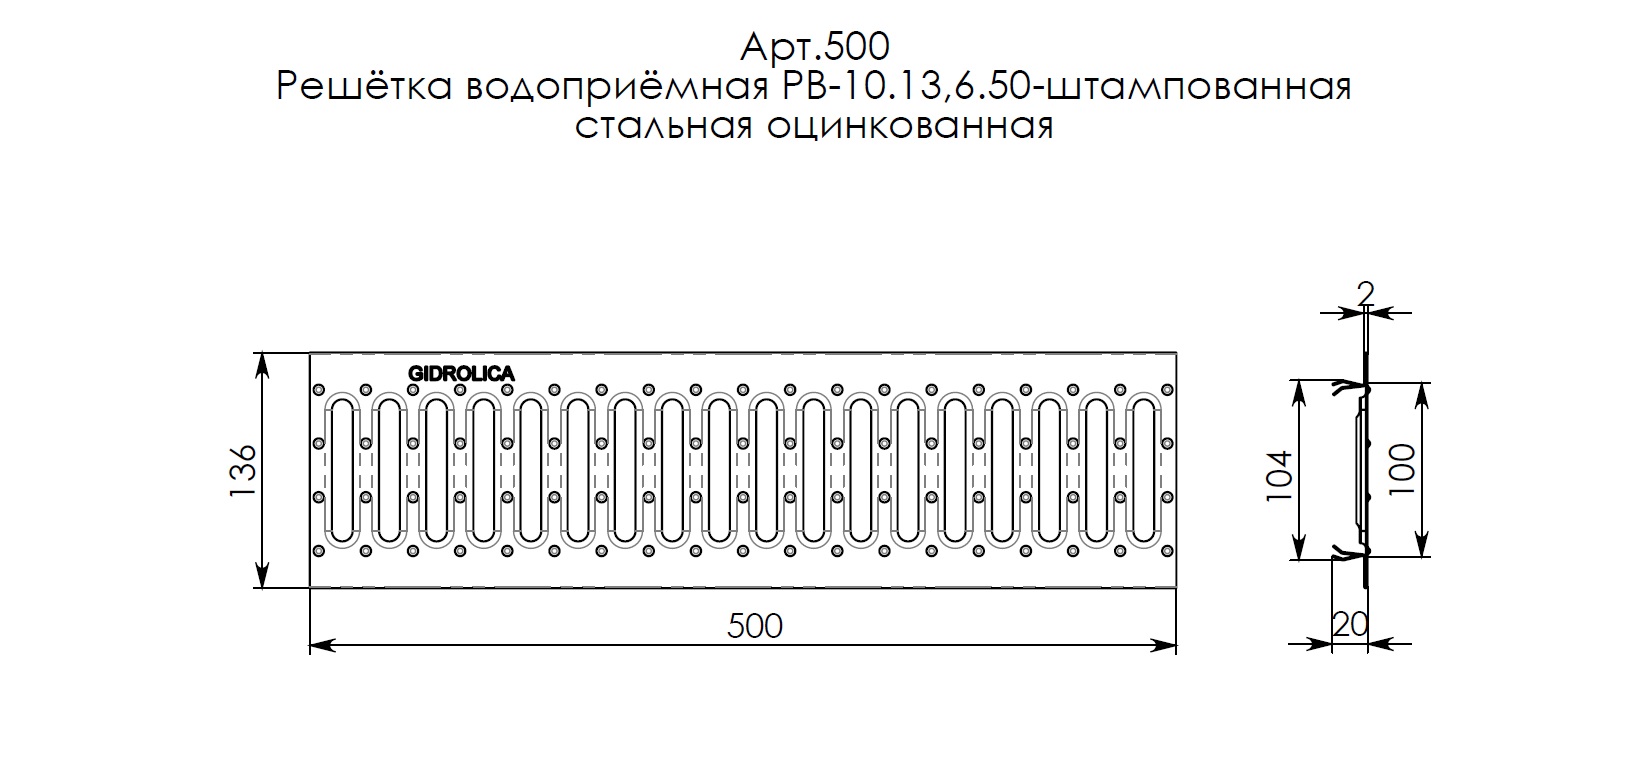 Решетка водоприемная Gidrolica Standart РВ-10.13,6.50-штамп. стальная оцинк., кл. А15 (500) 4